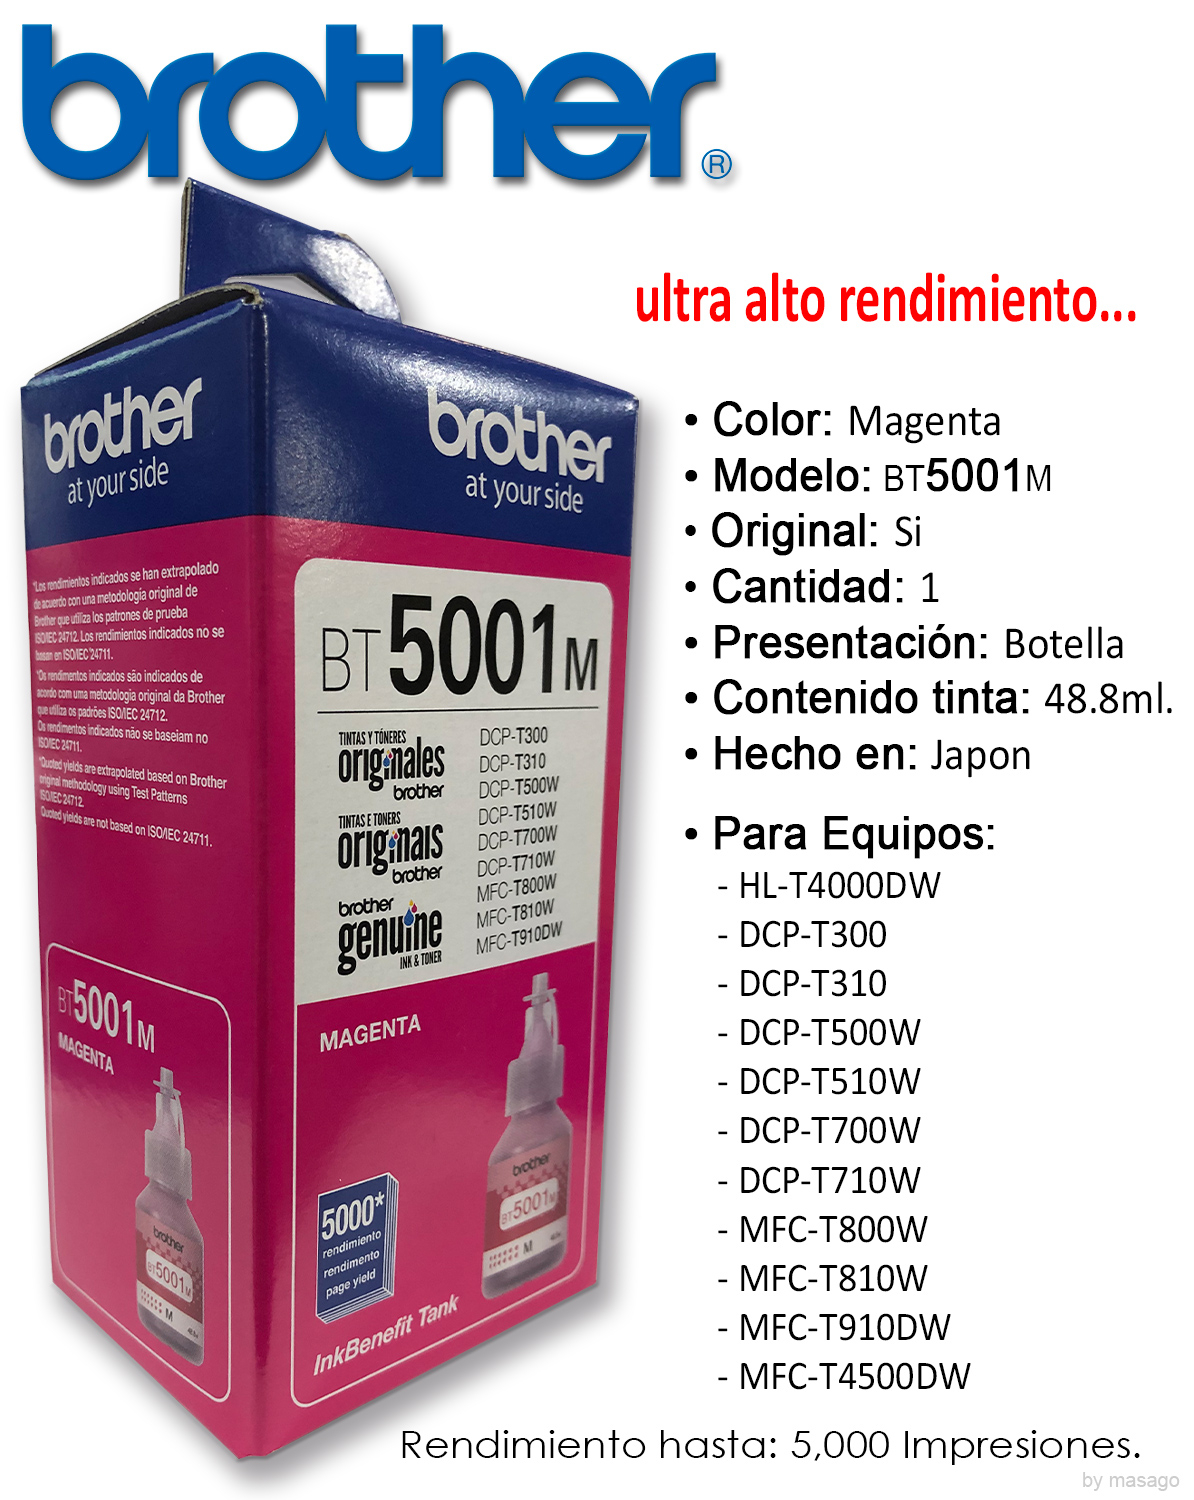 Combo 3 Botella Tinta Brother 1 BT5001c 1 BT5001m 1 BT5001y Originales